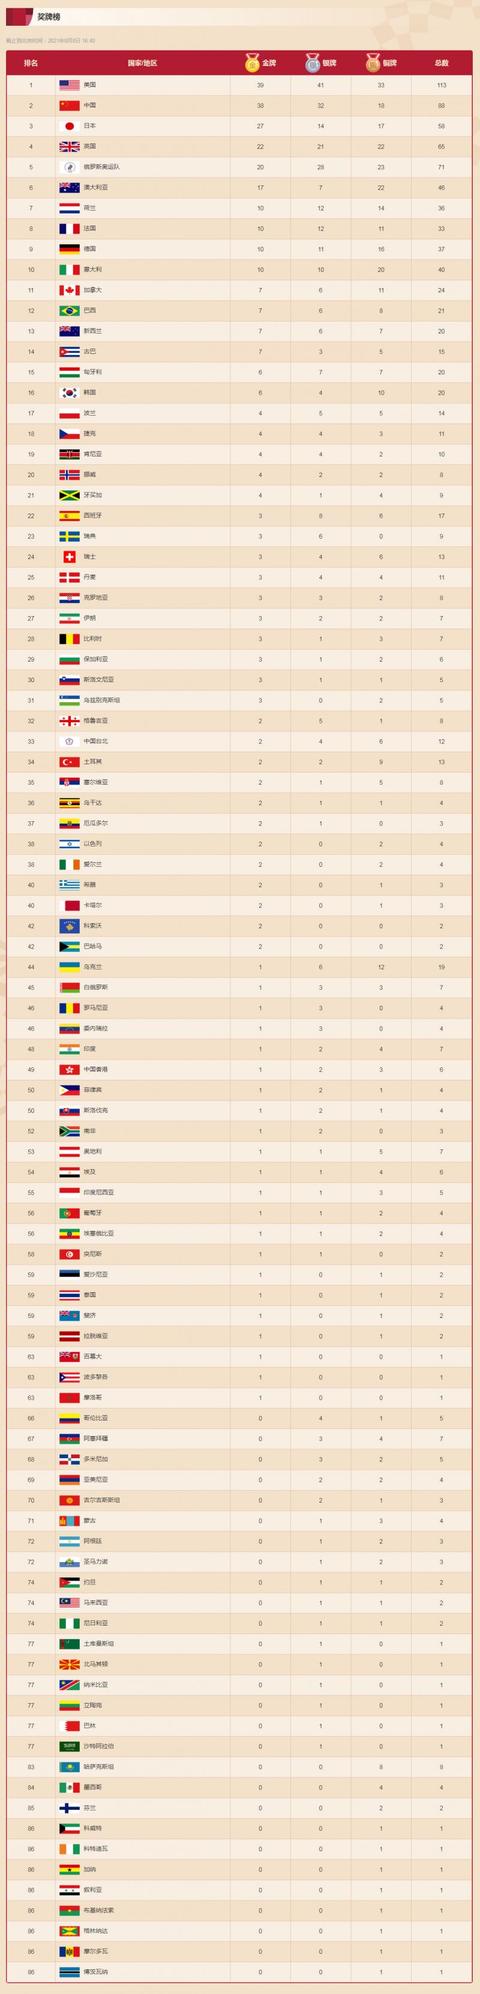 2021奥运会奖牌榜排名中国（奥运会赛程2021奖牌榜排名 ）